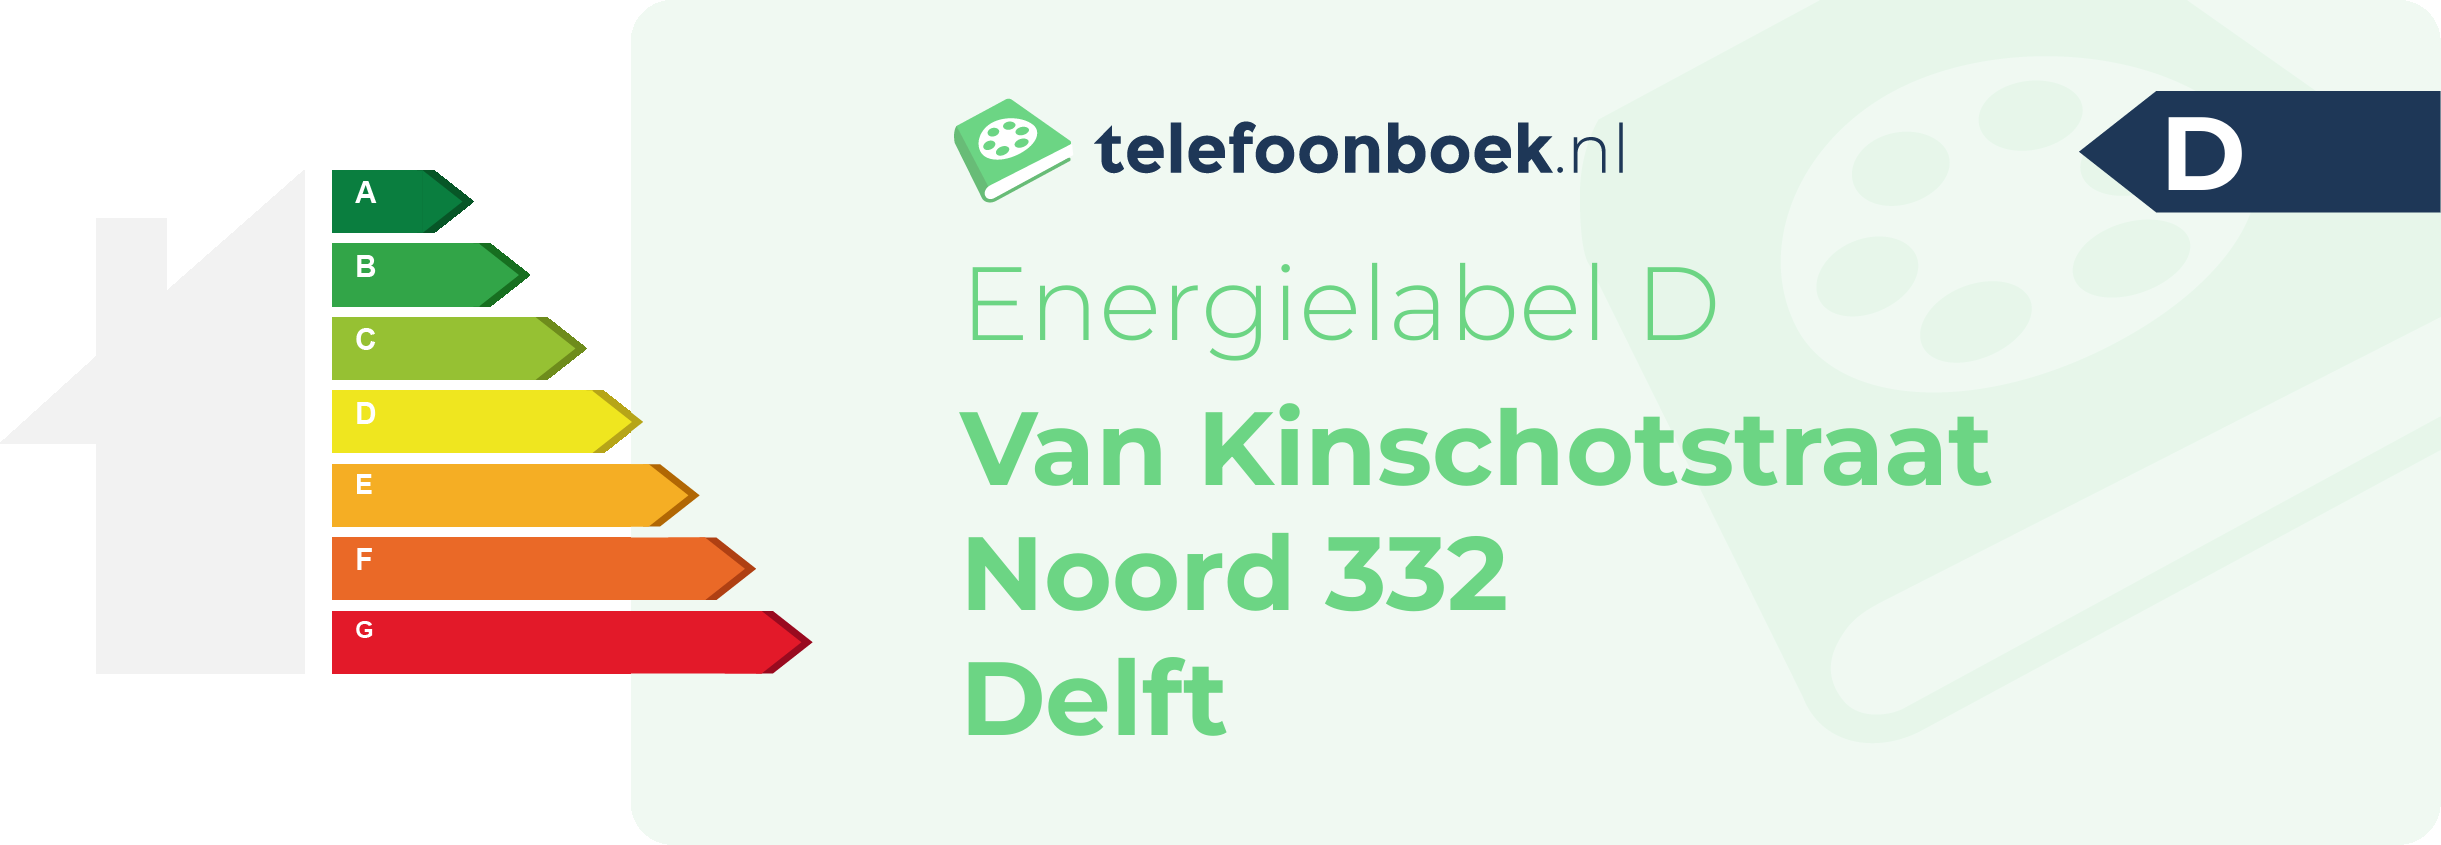 Energielabel Van Kinschotstraat Noord 332 Delft